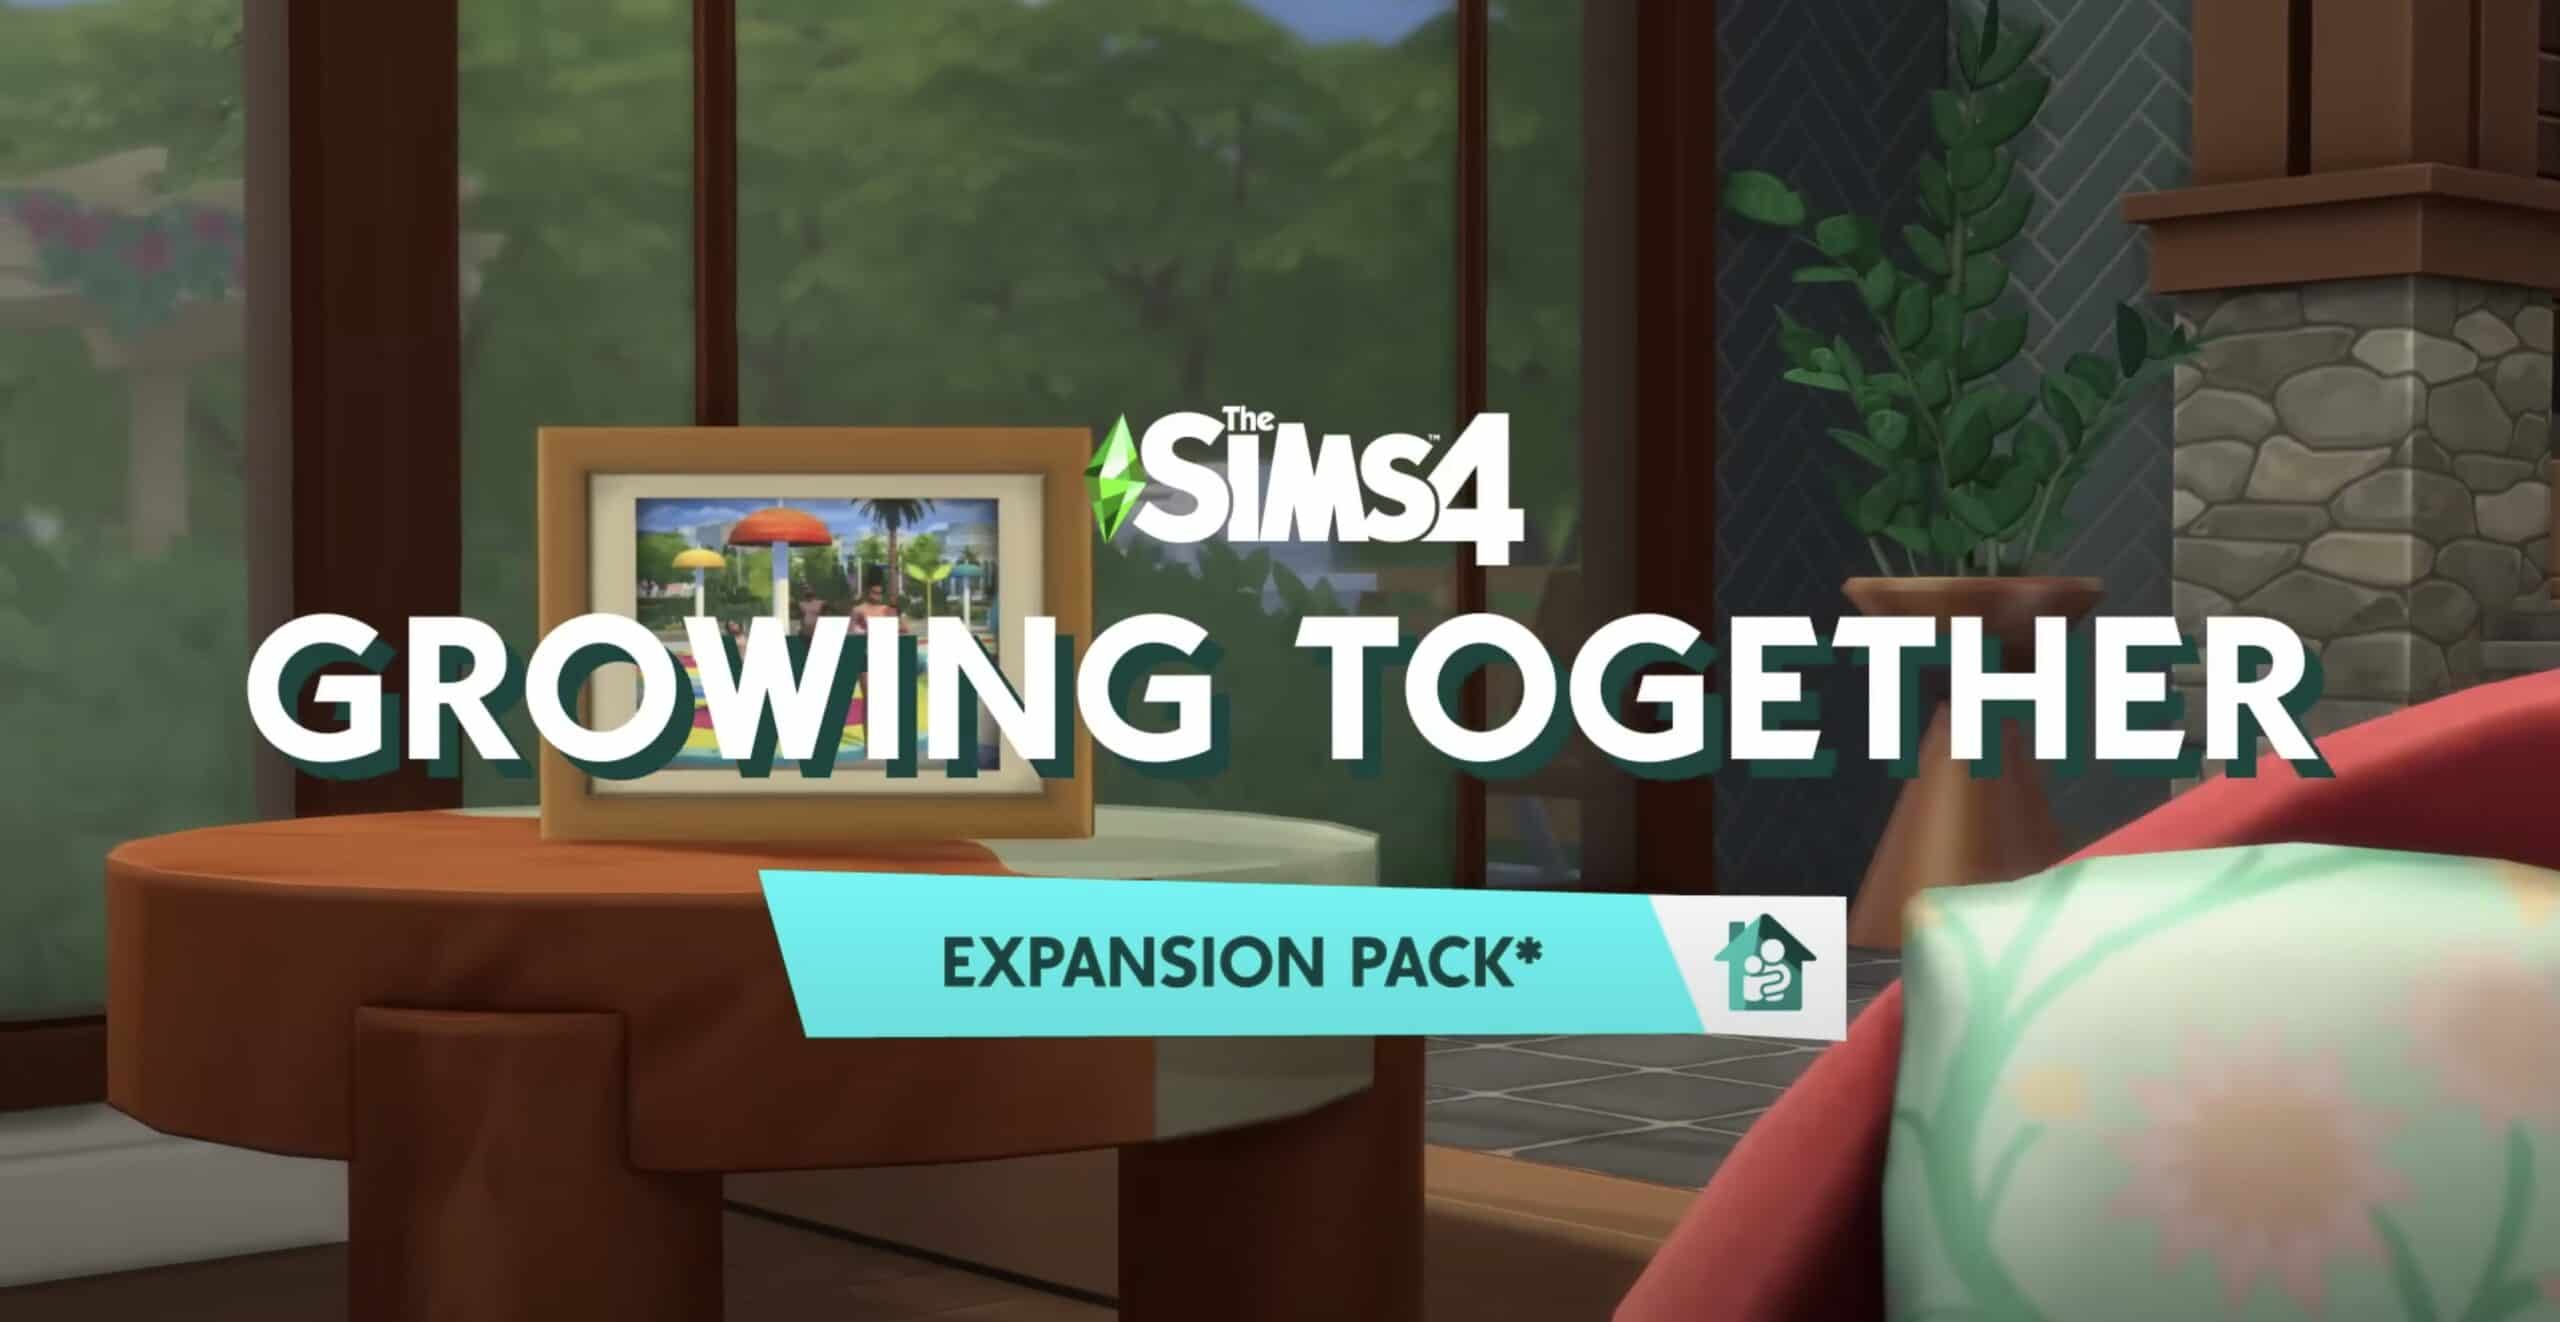 Moschino x Sims Collection Is Peak '00s Nostalgia